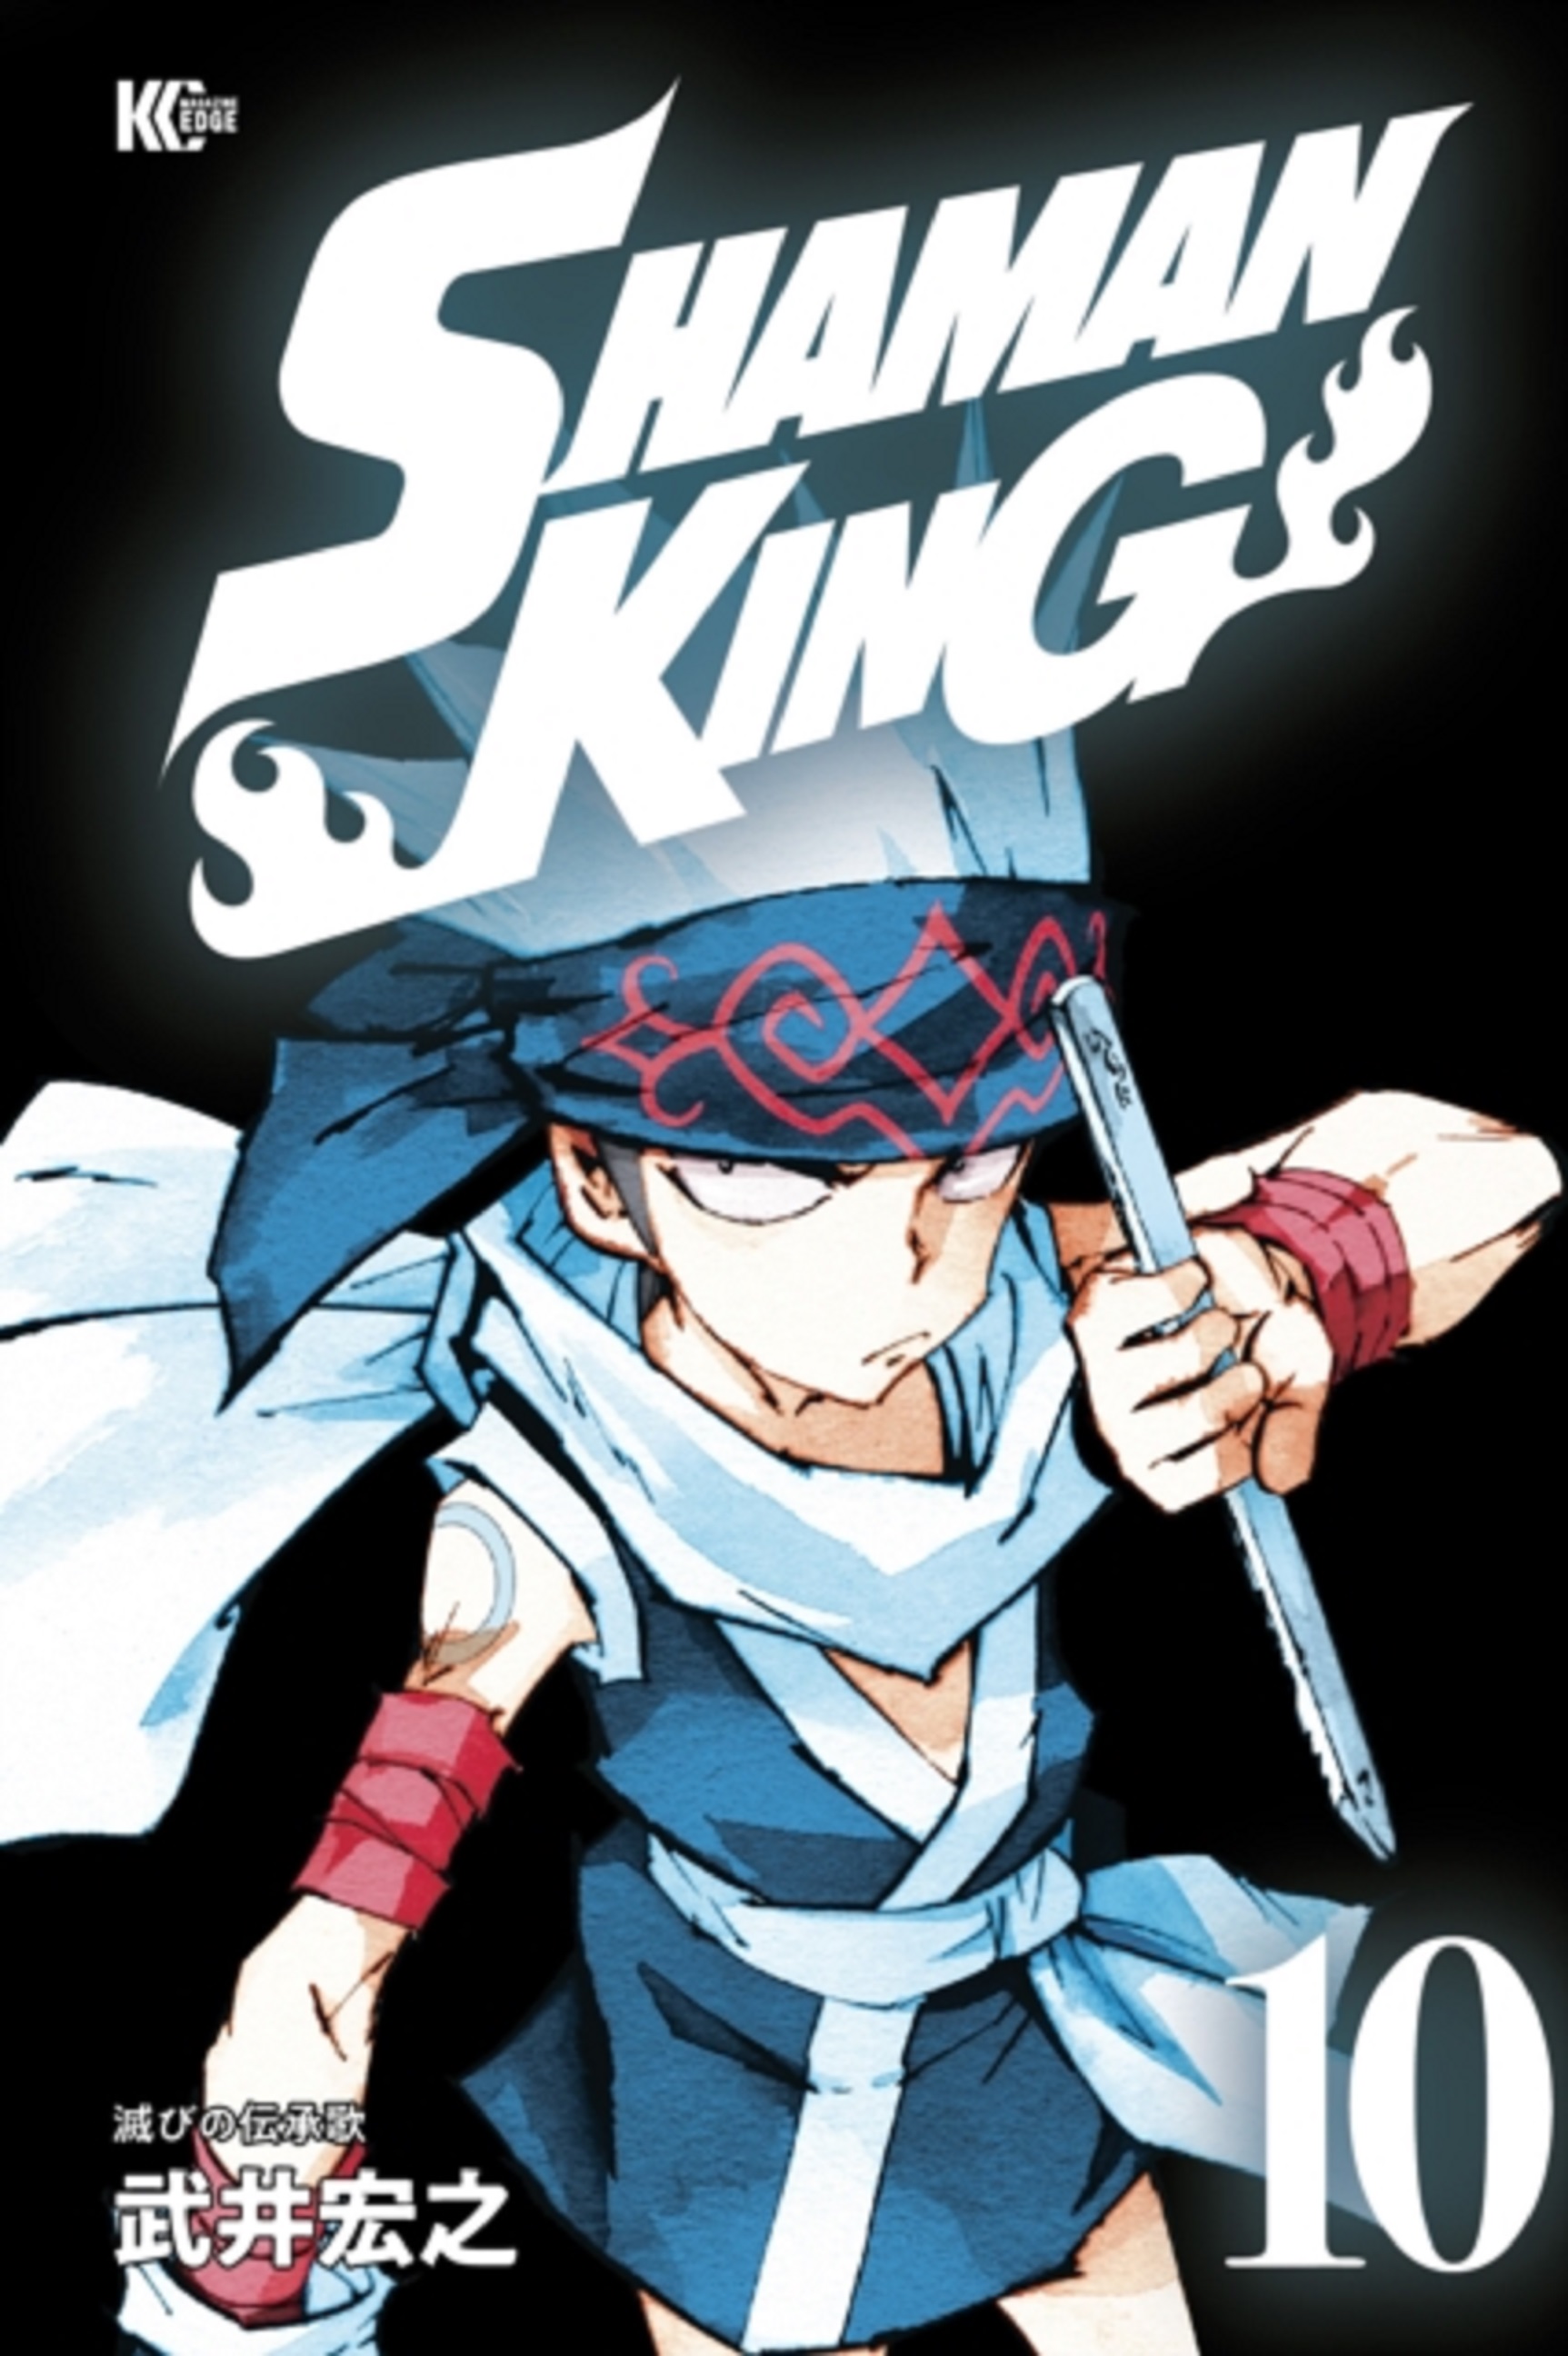 Shaman King - Volumes 13-15